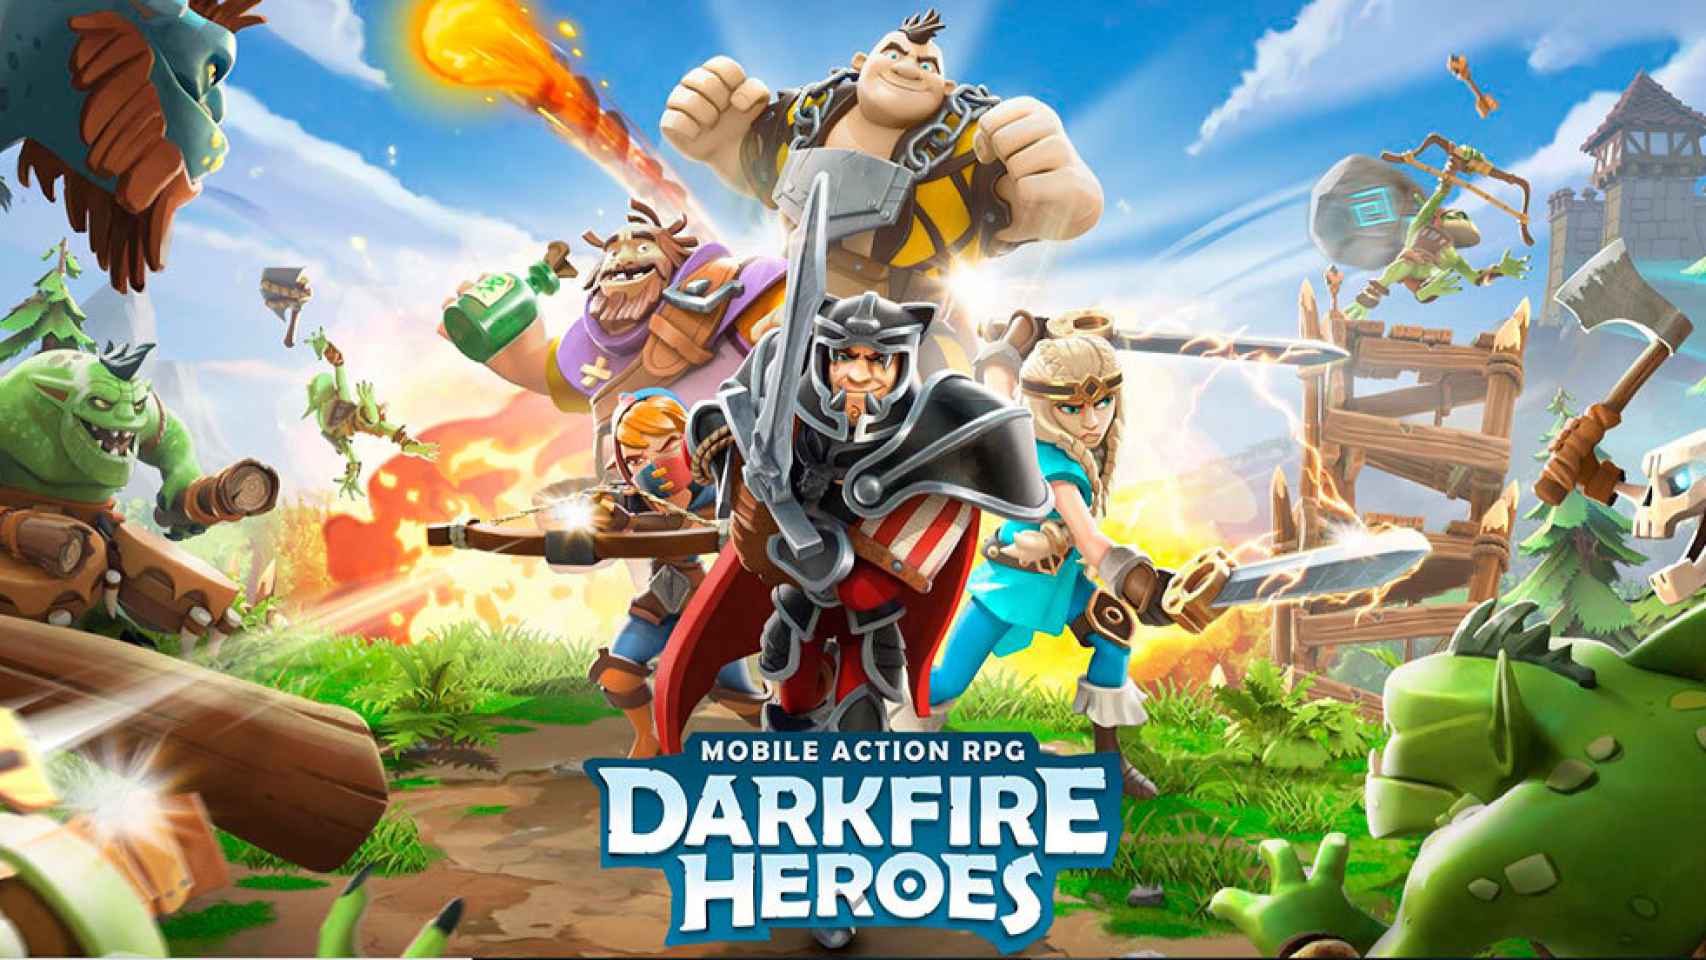 Llega lo nuevo de Rovio: Darkfire Heroes, un RPG de acción con combate automático